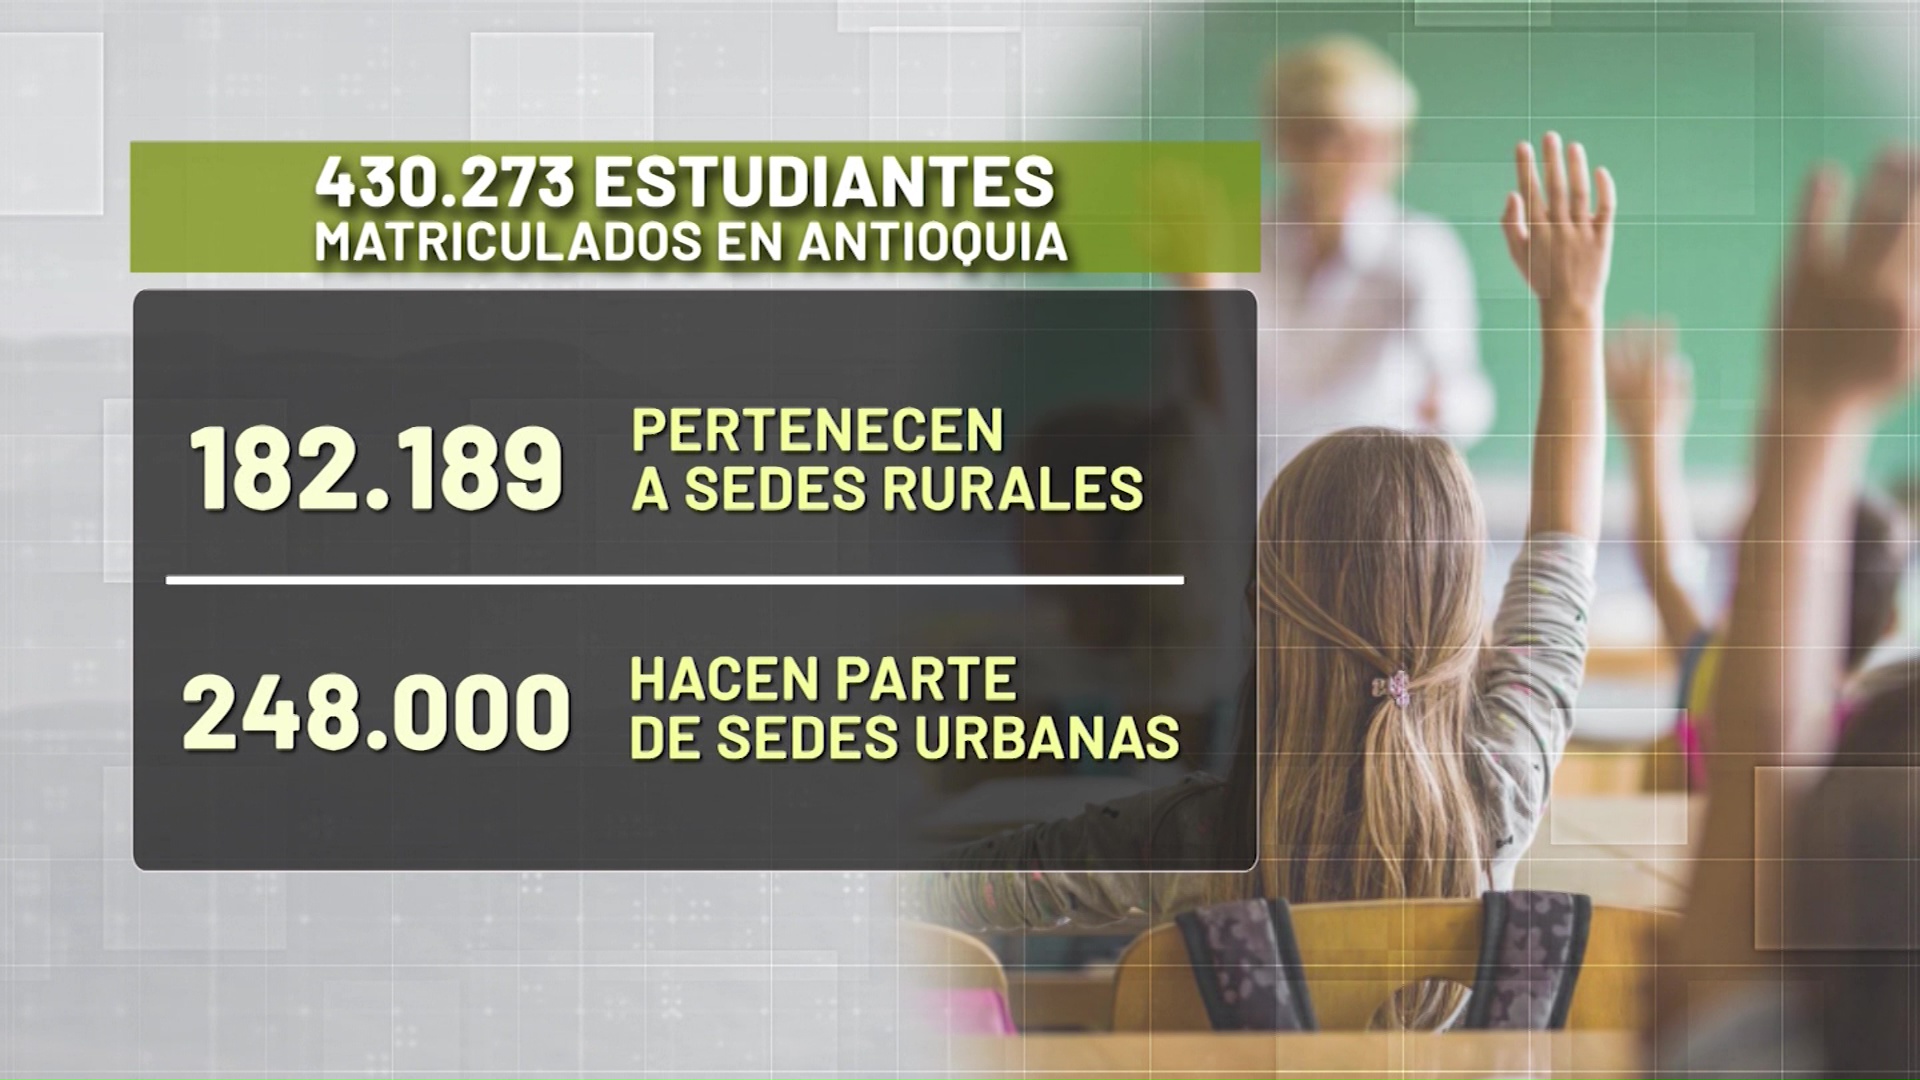 430.273 estudiantes matriculados en Antioquia